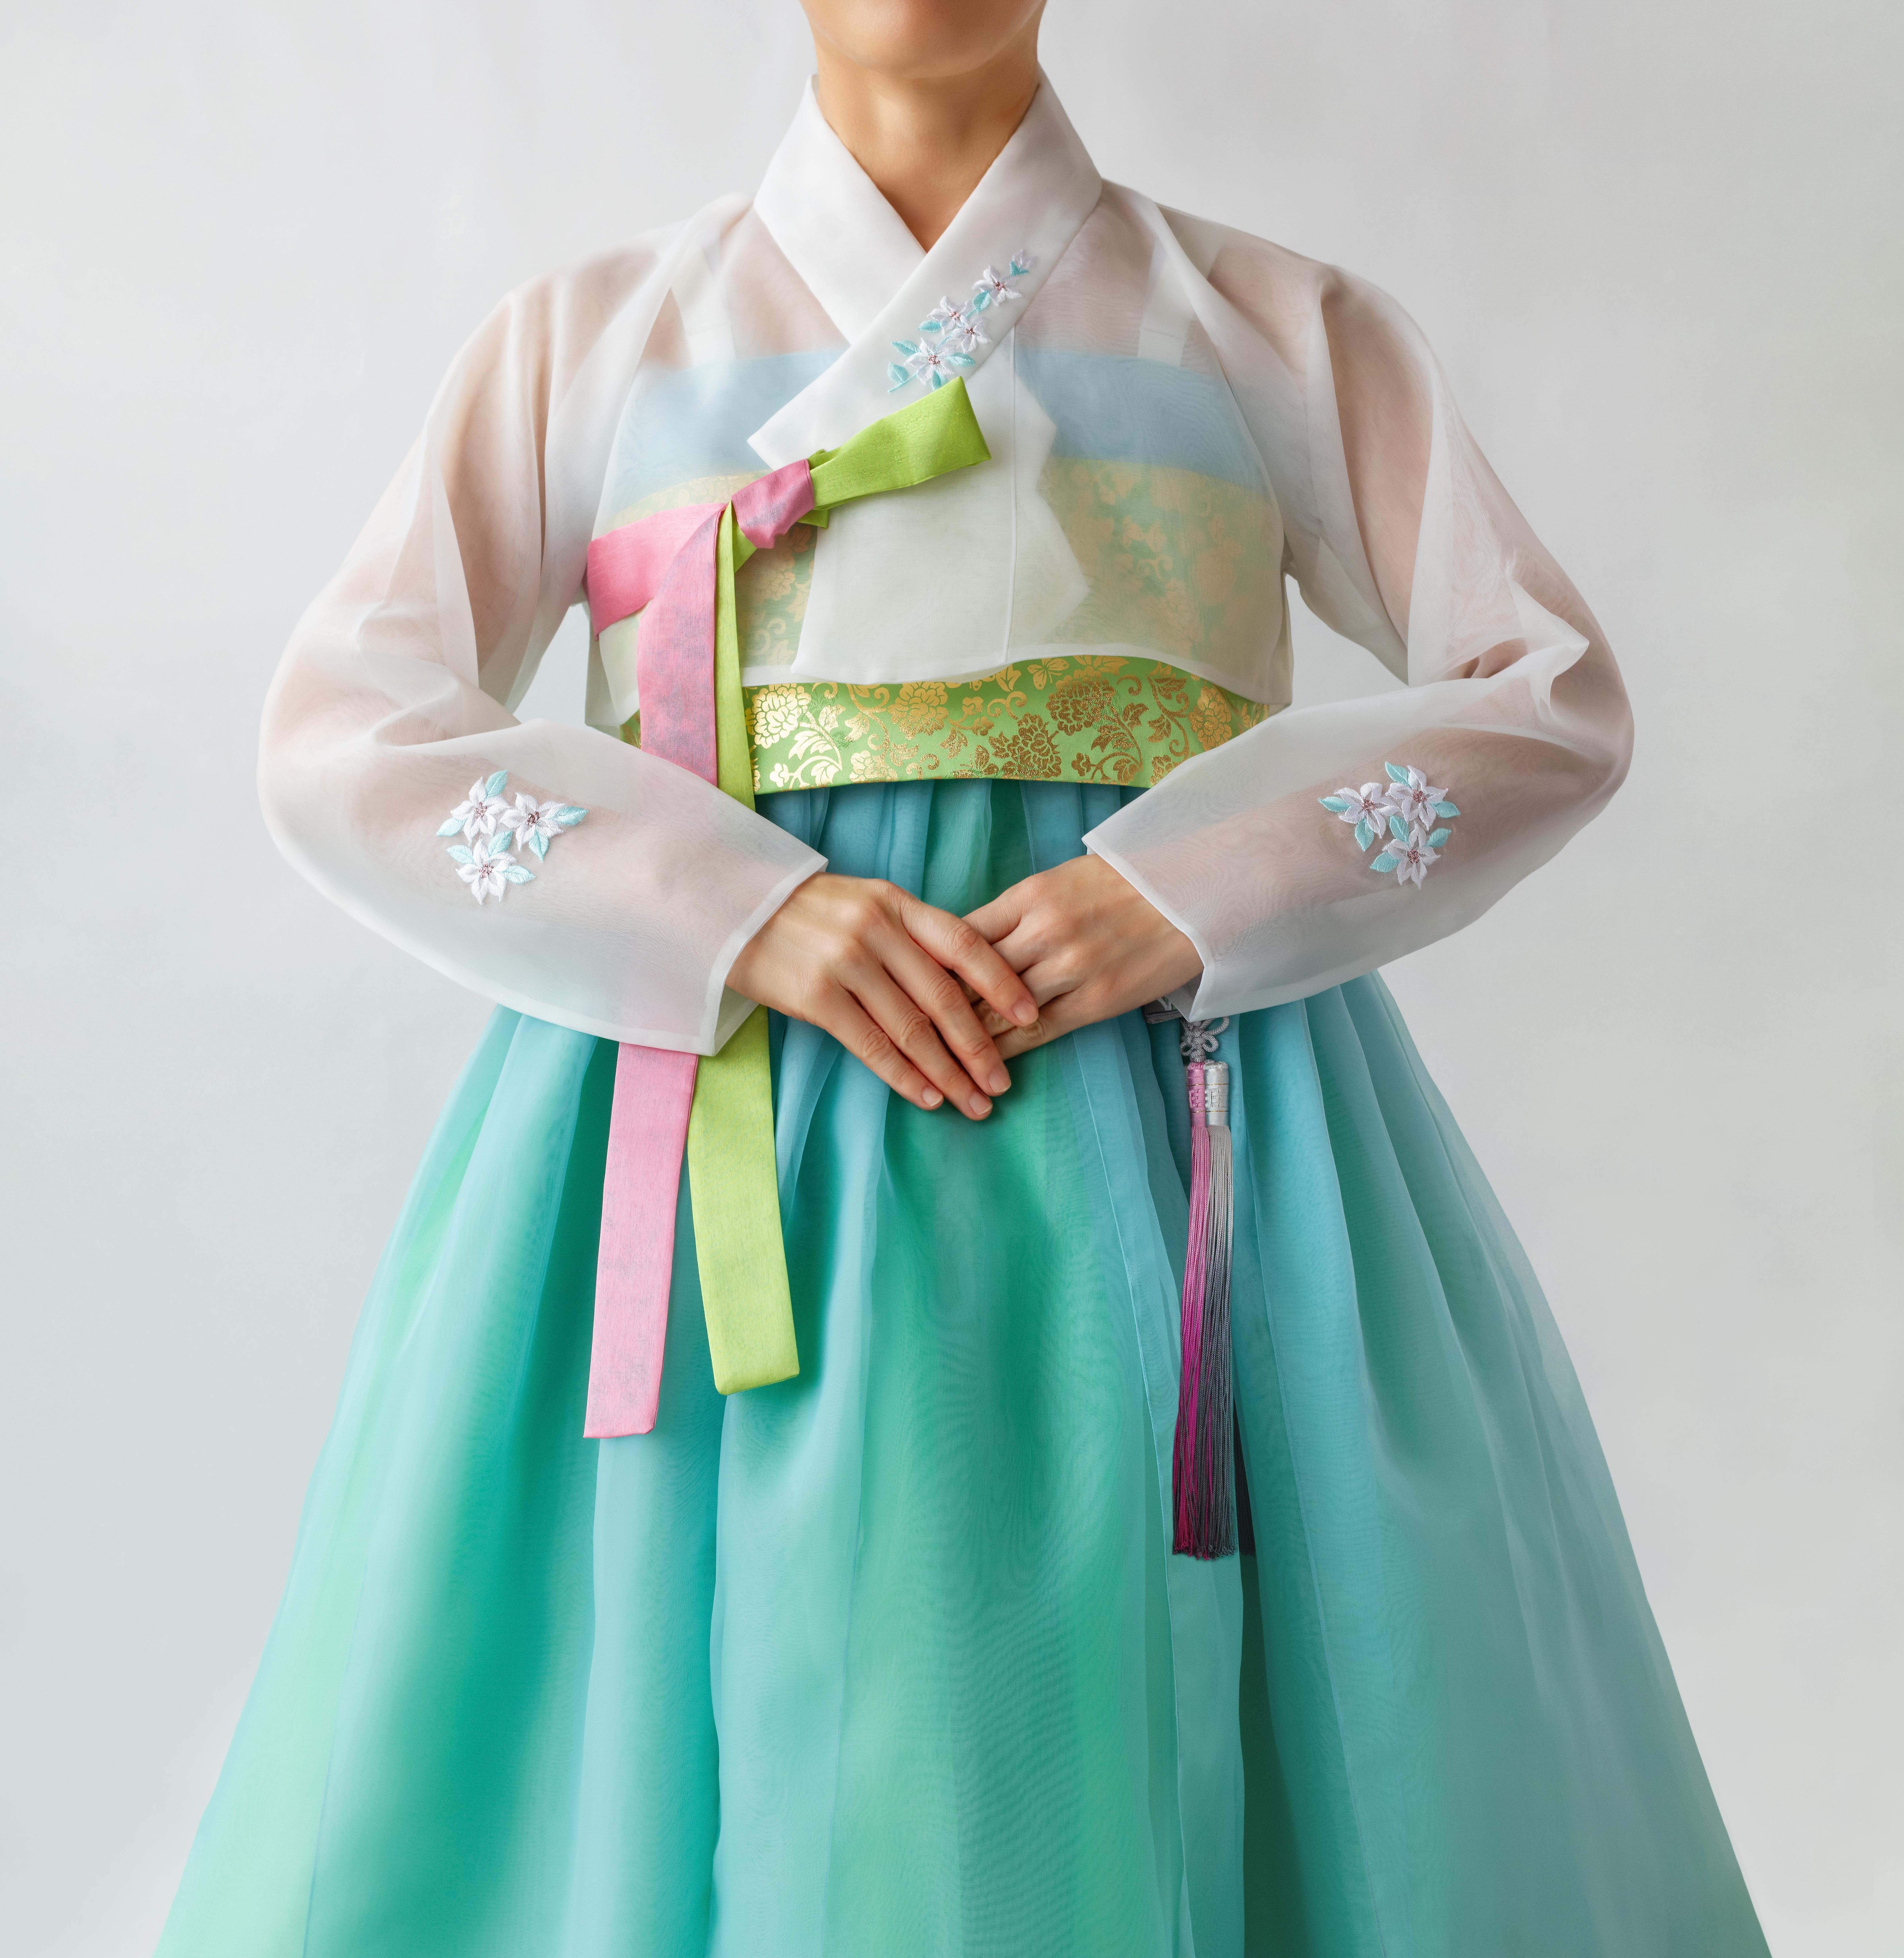 Hanbok | Source: Shutterstock